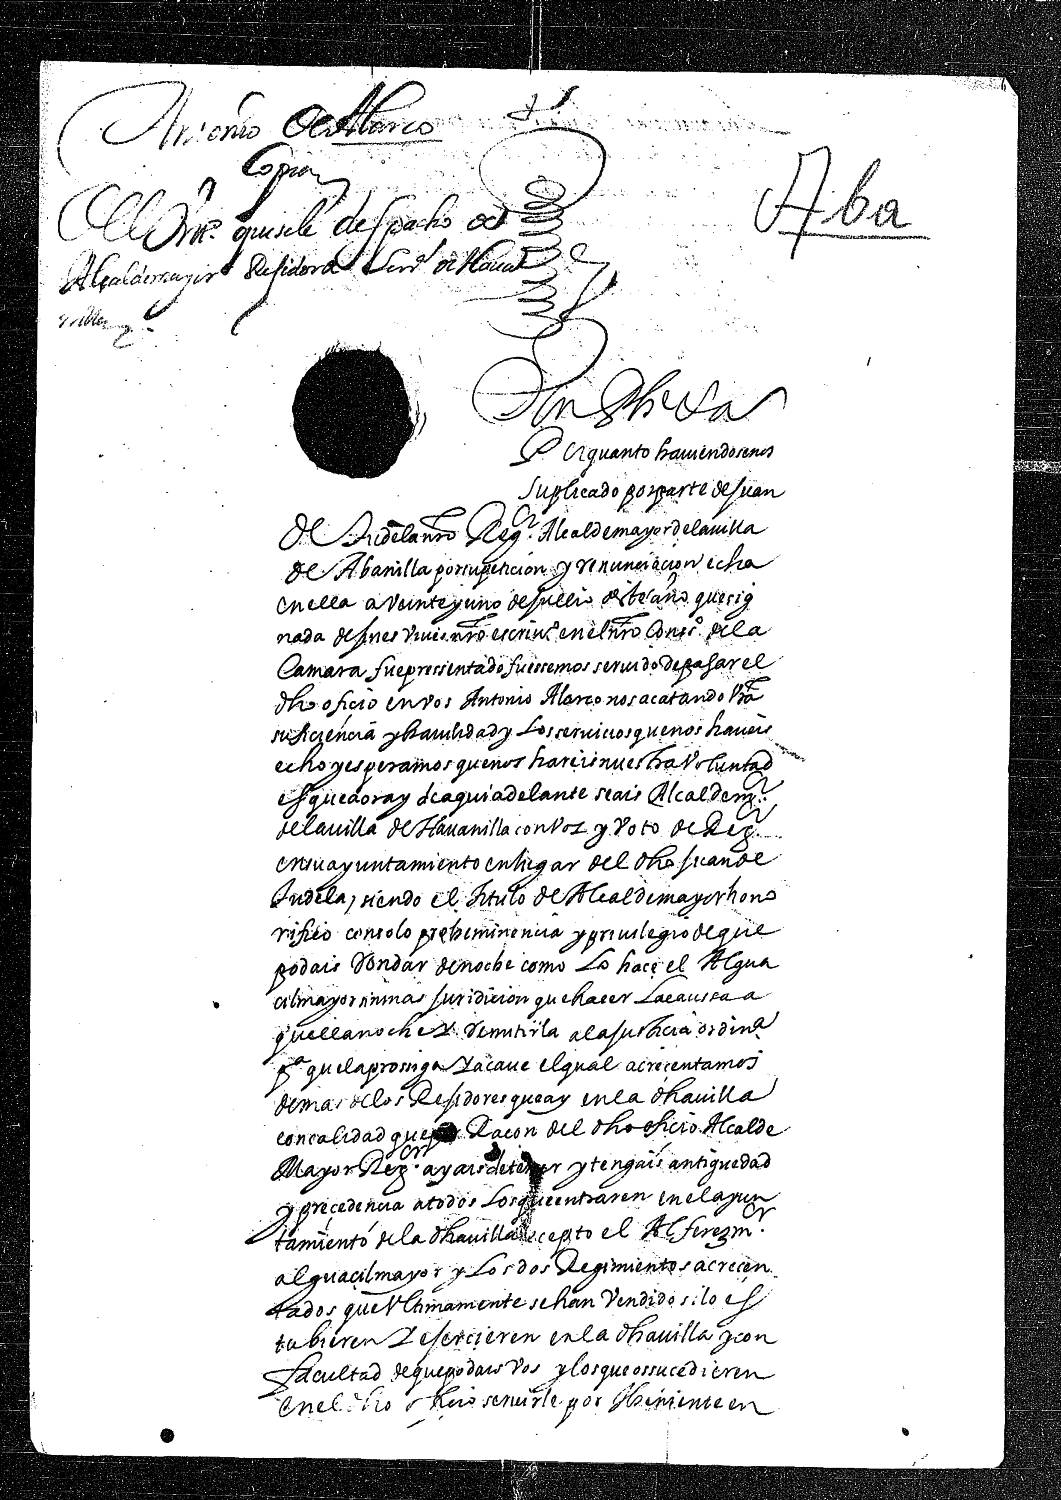 Carta real concediendo a Antonio Alarco el título de alcalde mayor de la villa de Abanilla  por la renuncia  de su anterior poseedor Juan de Tudela.